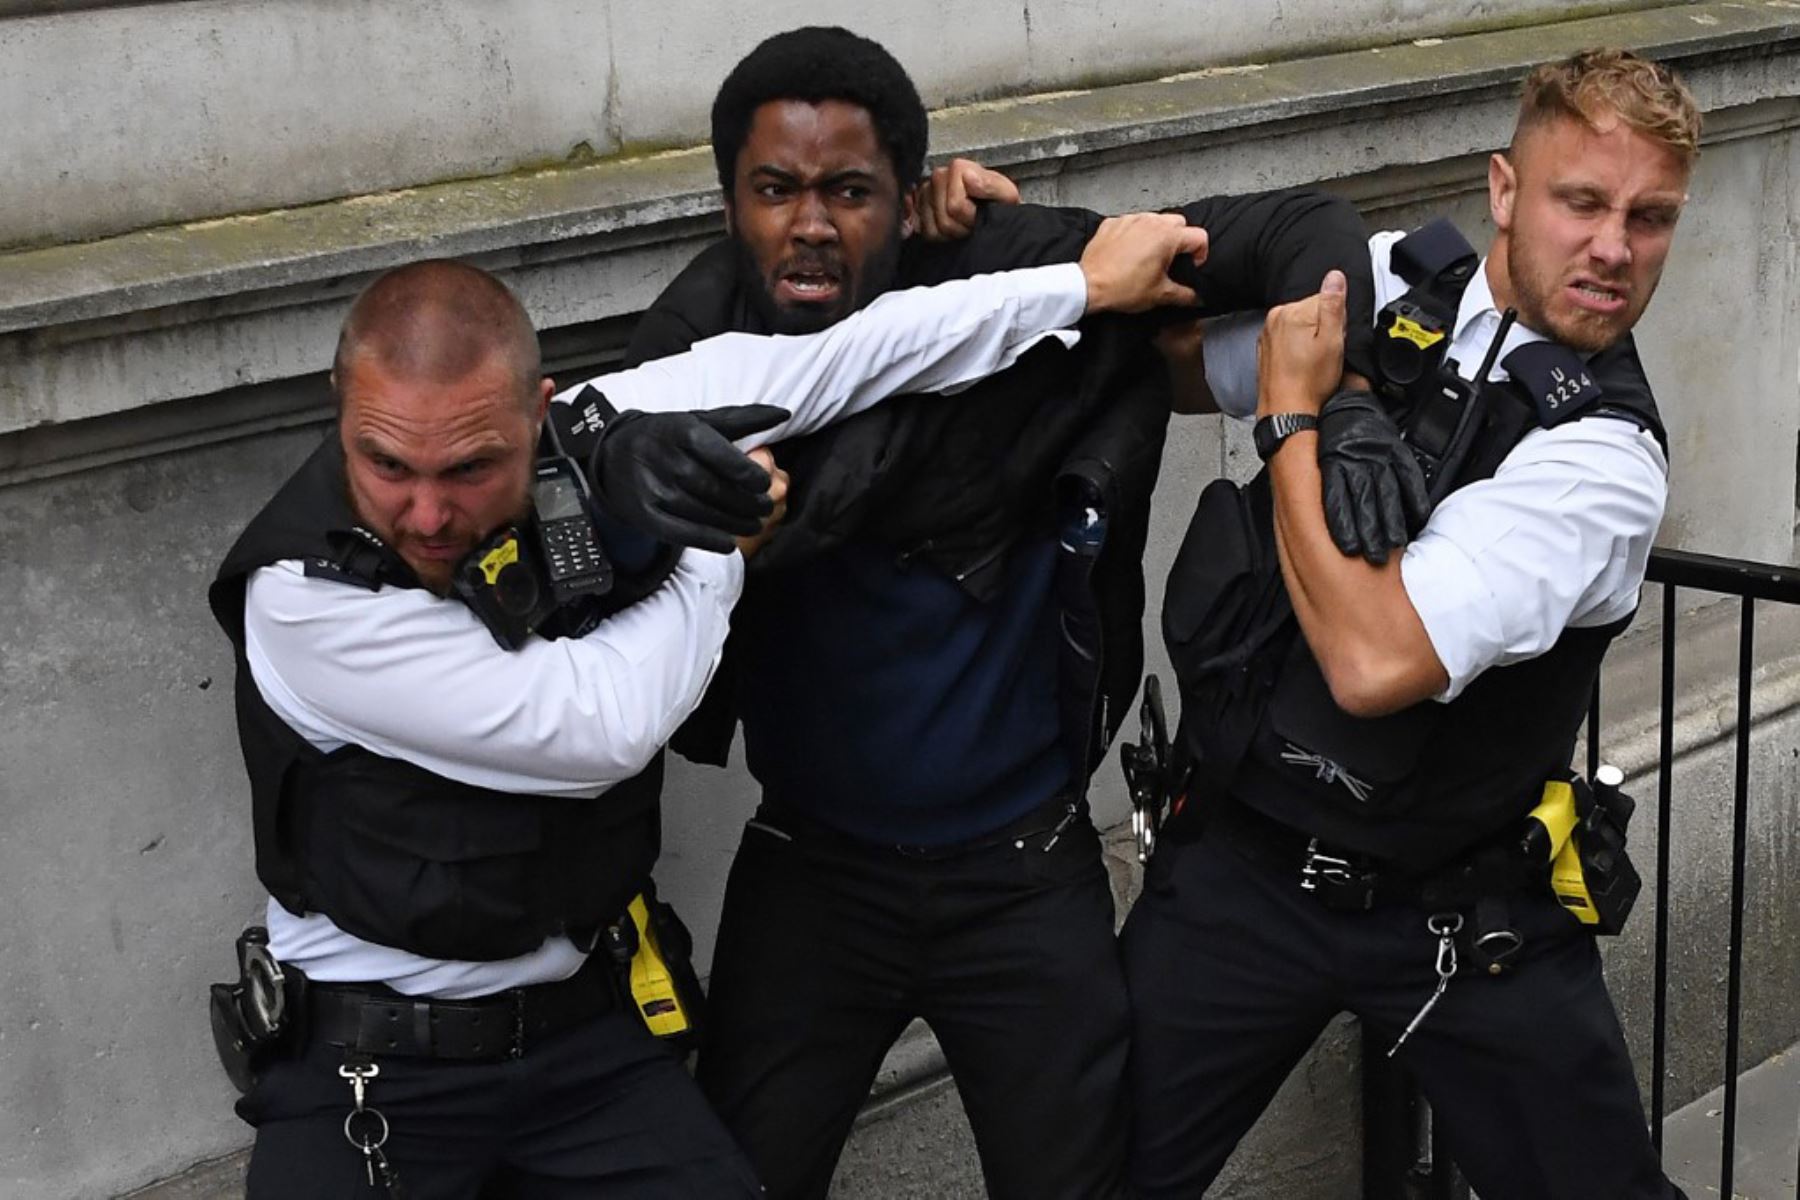 Los agentes de policía reaccionan cuando intentan detener a un manifestante cerca de la entrada de Downing Street, durante una manifestación antirracista en Londres, después de que George Floyd, un hombre negro desarmado murió después de que un oficial de policía se arrodilló en su cuello durante un arresto en Minneapolis, Estados Unidos.
Foto: AFP